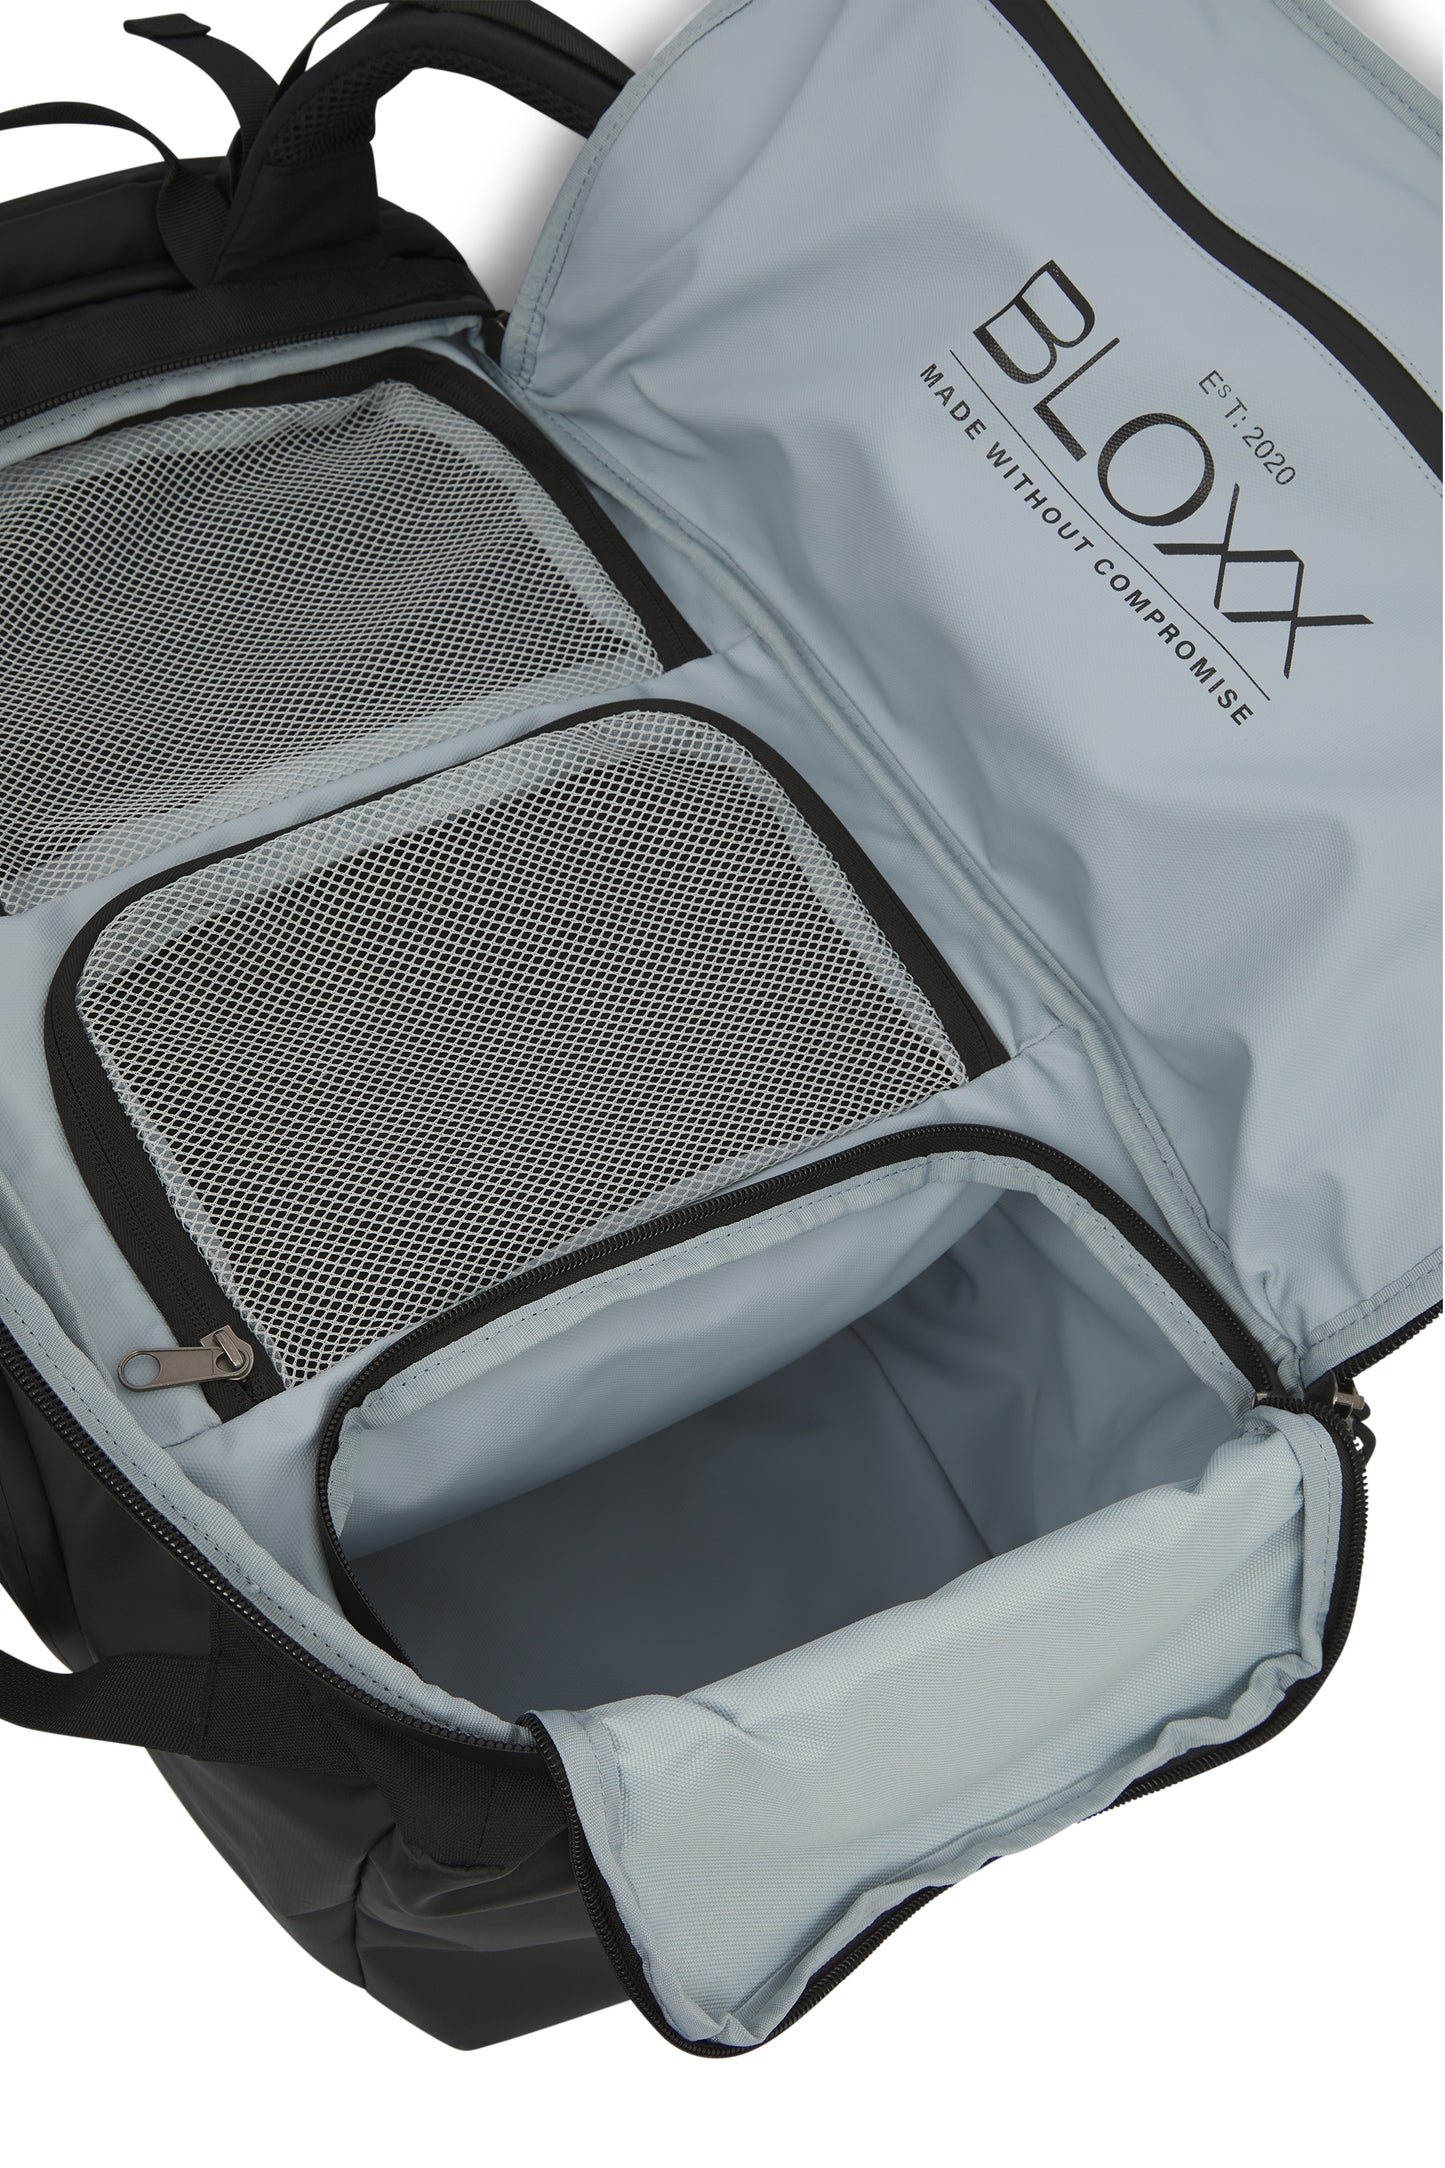 BLOXX Bag